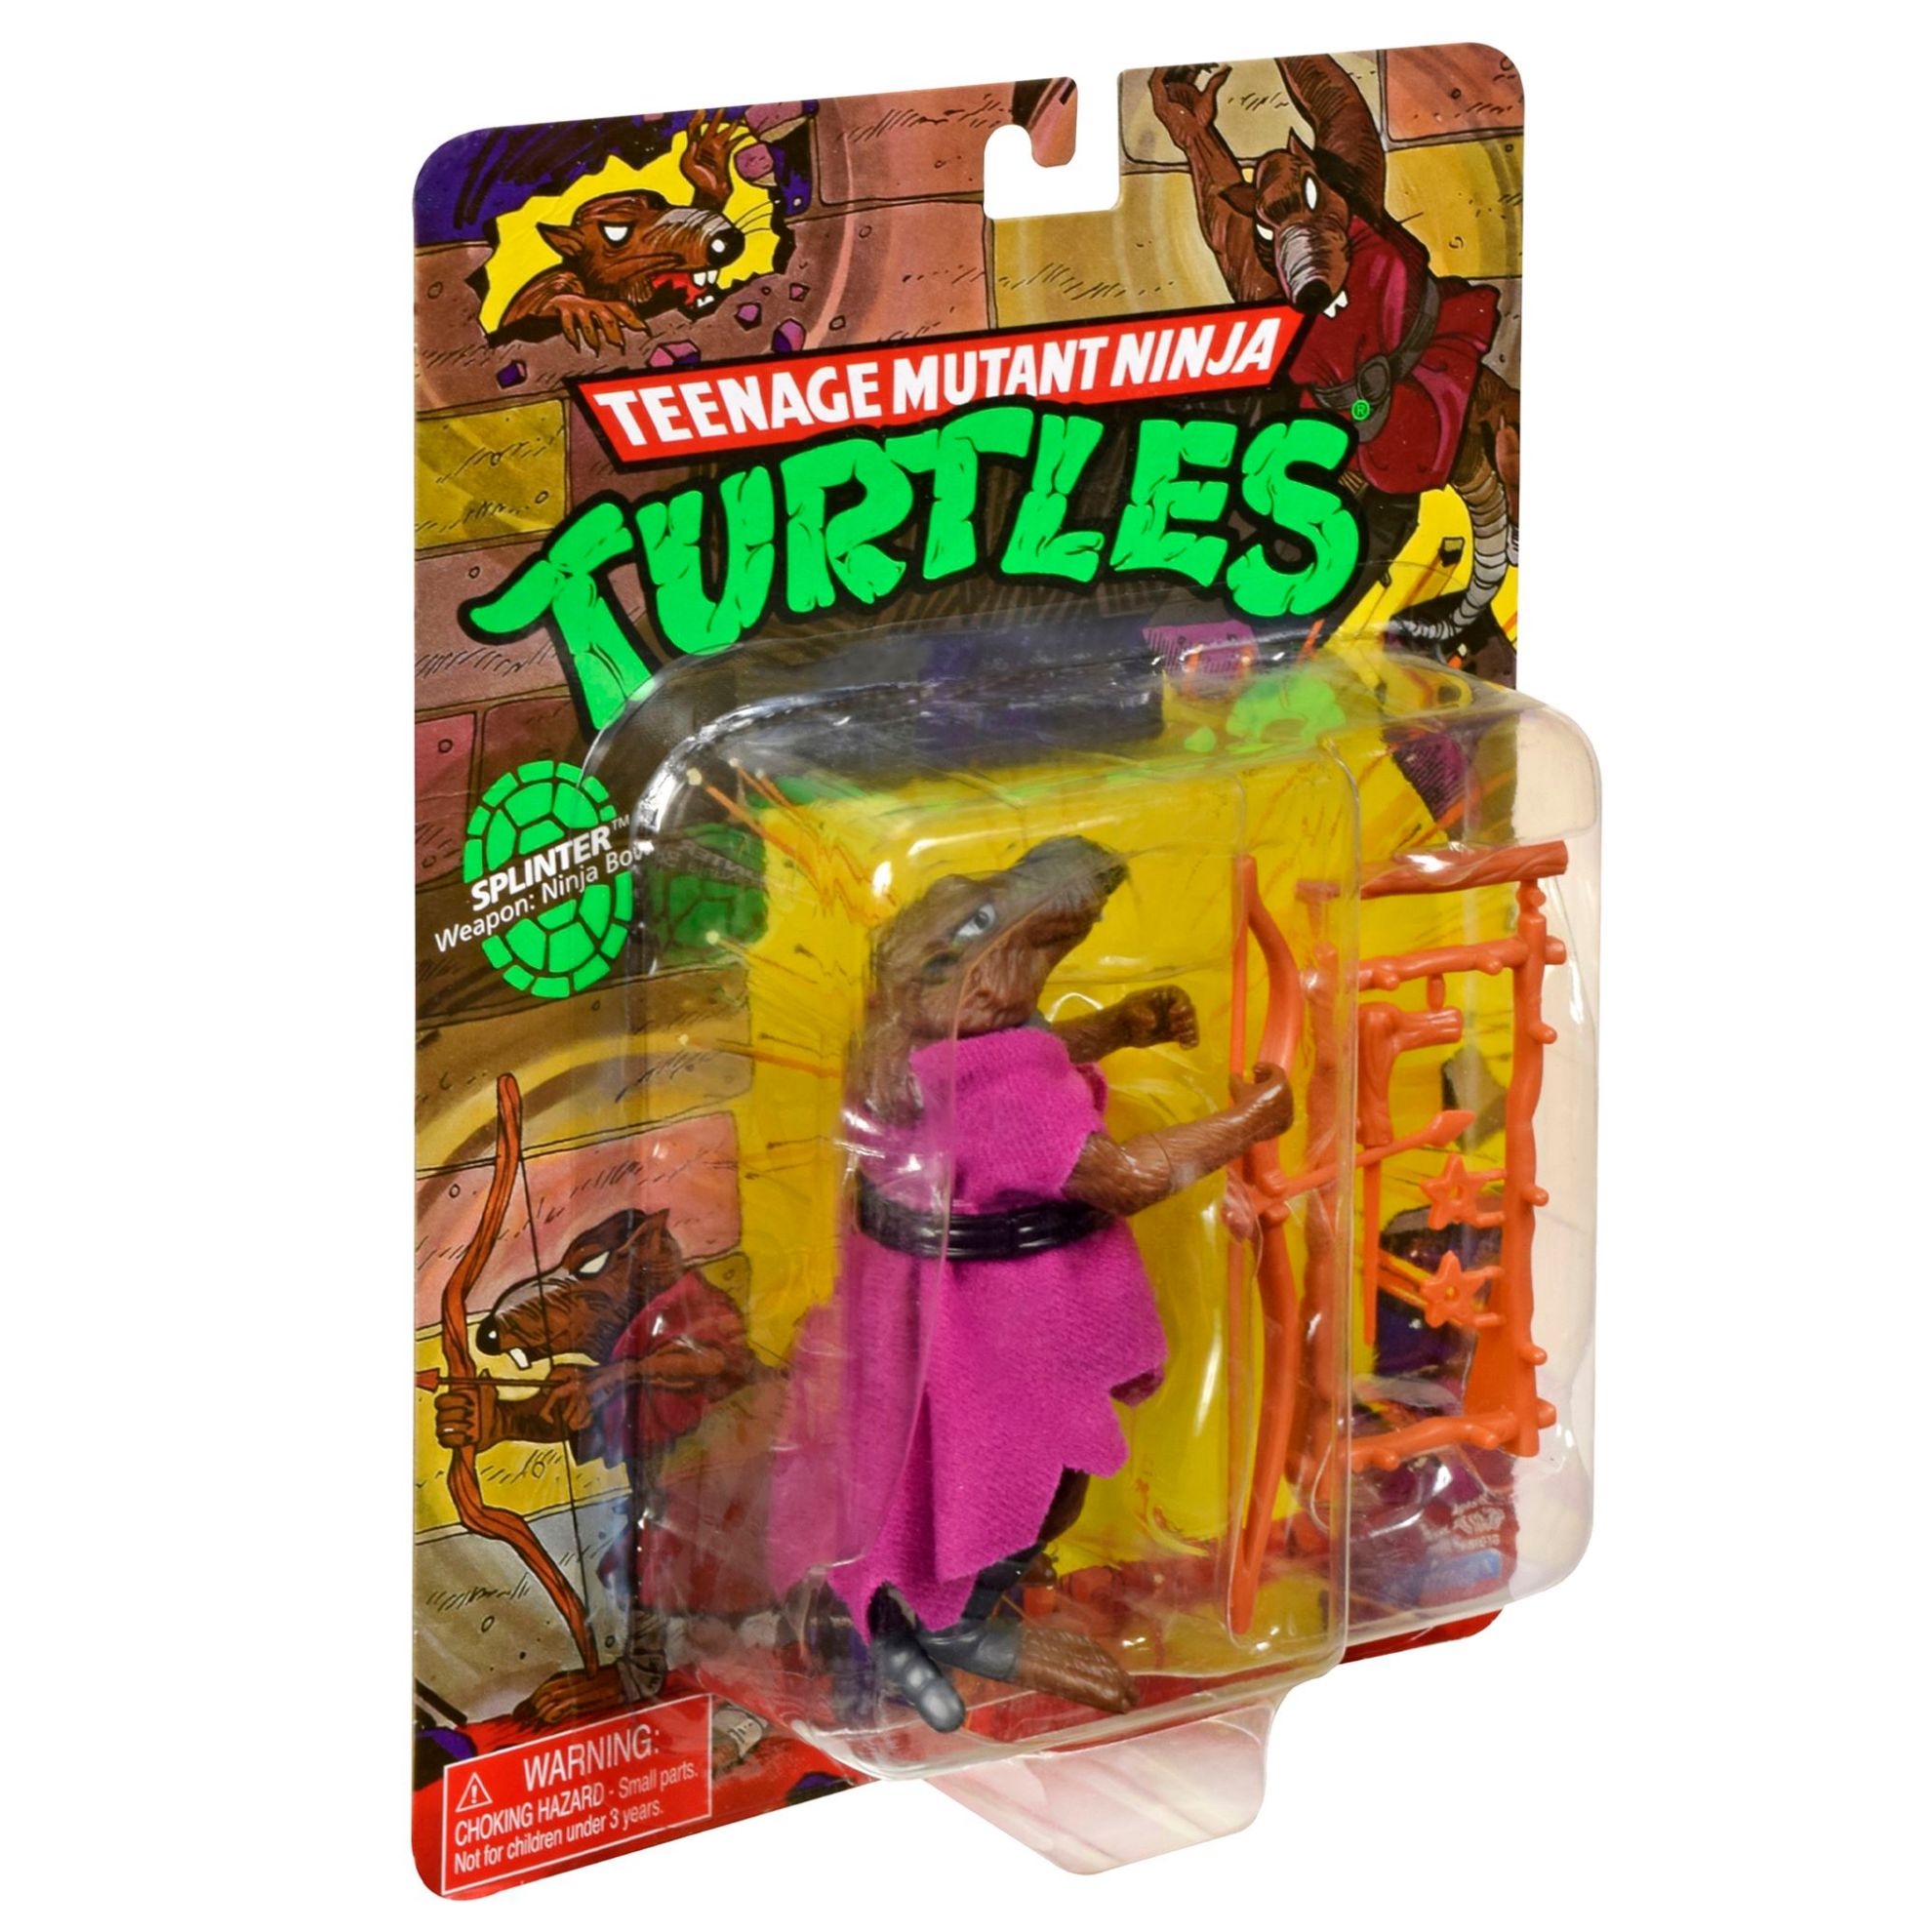 Teenage Mutant Ninja Turtles Classic Mutant Figures - Shredder